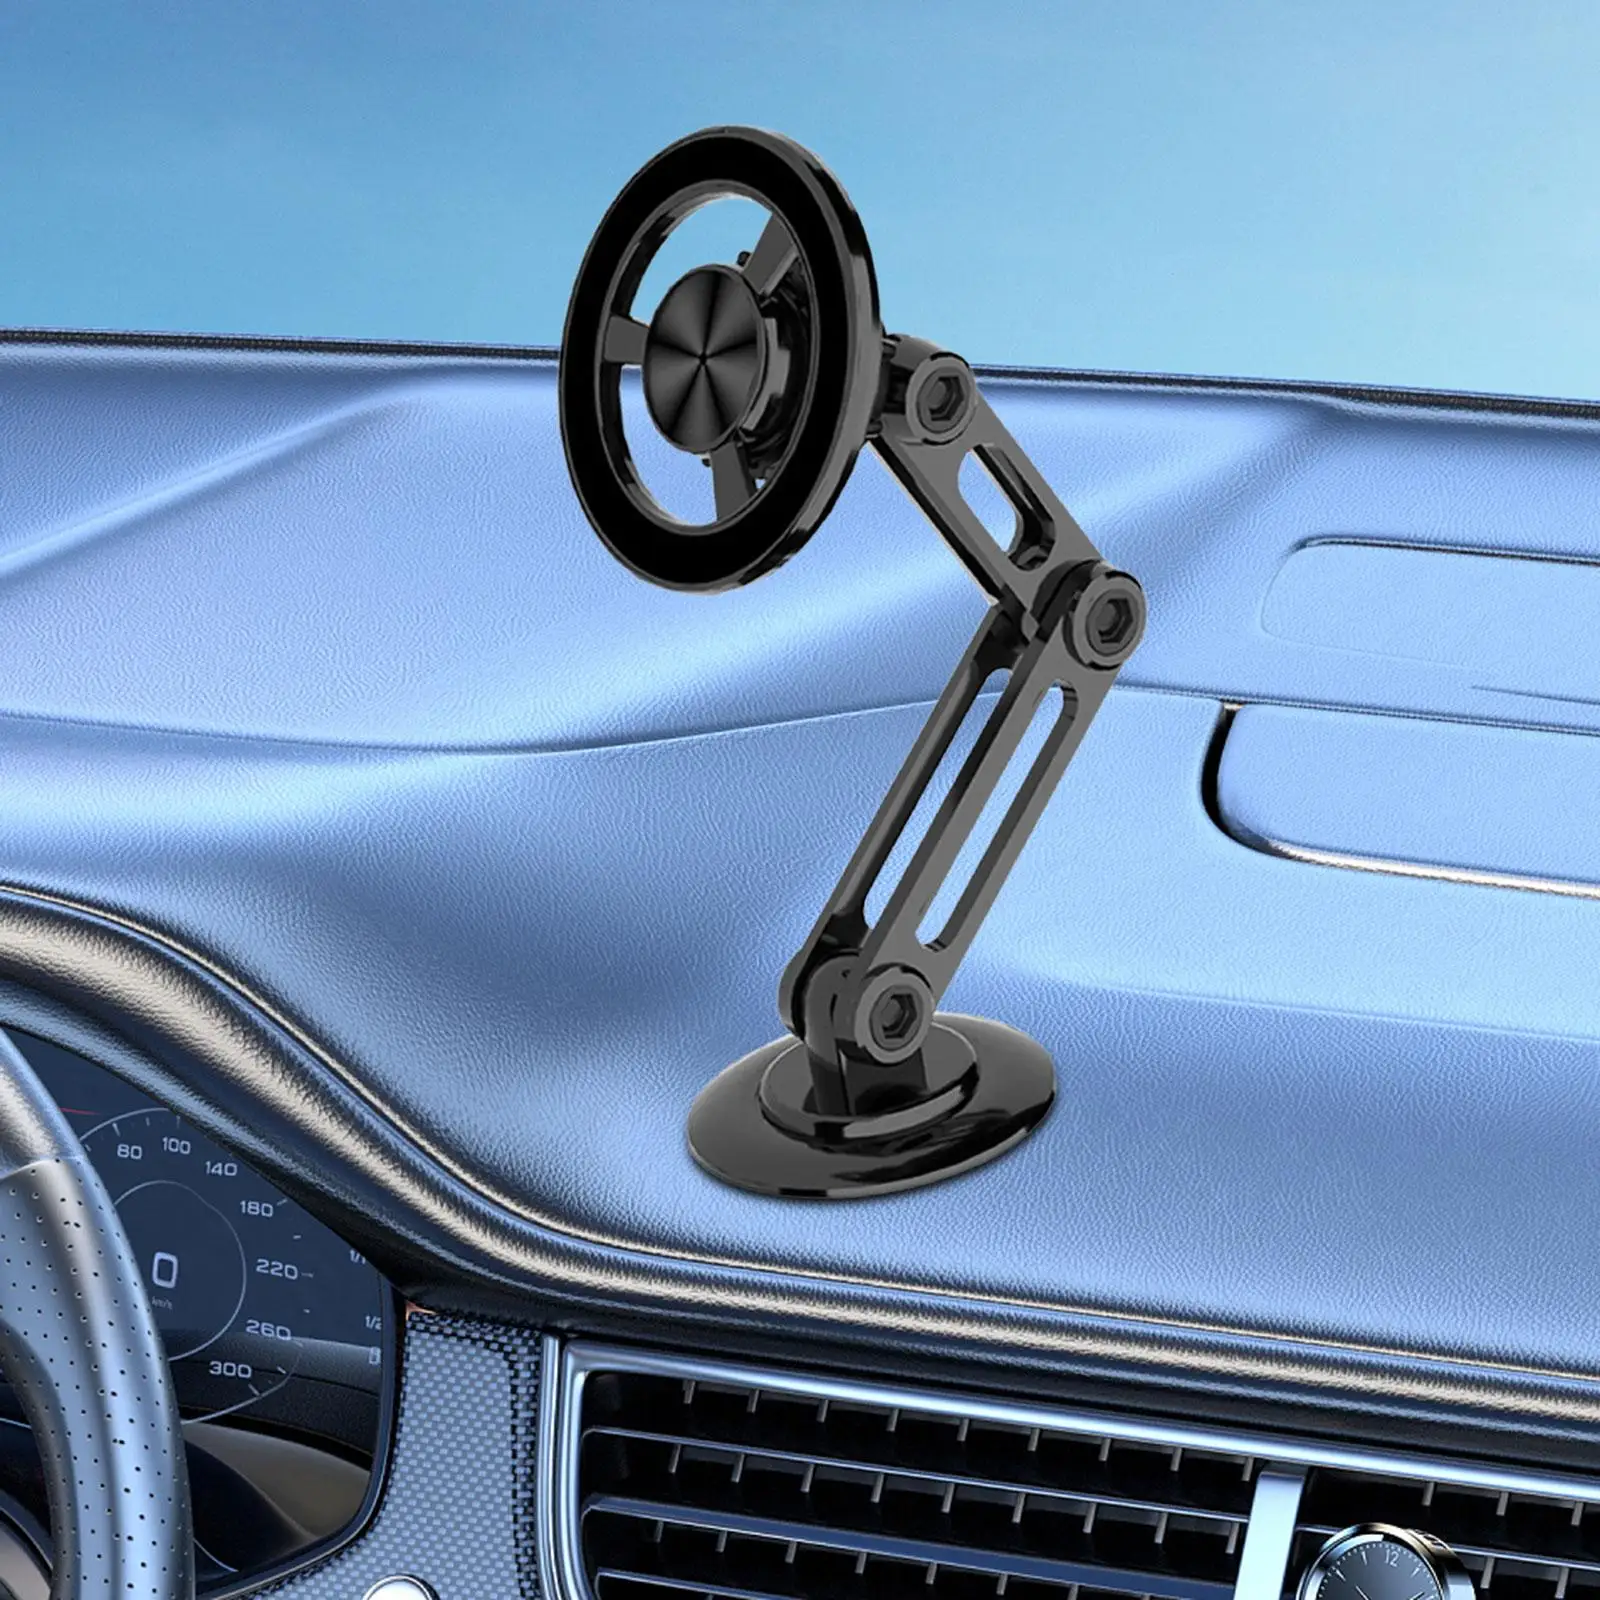 Phone Holder Folding Design Magnetic Car Mount for Dashboard